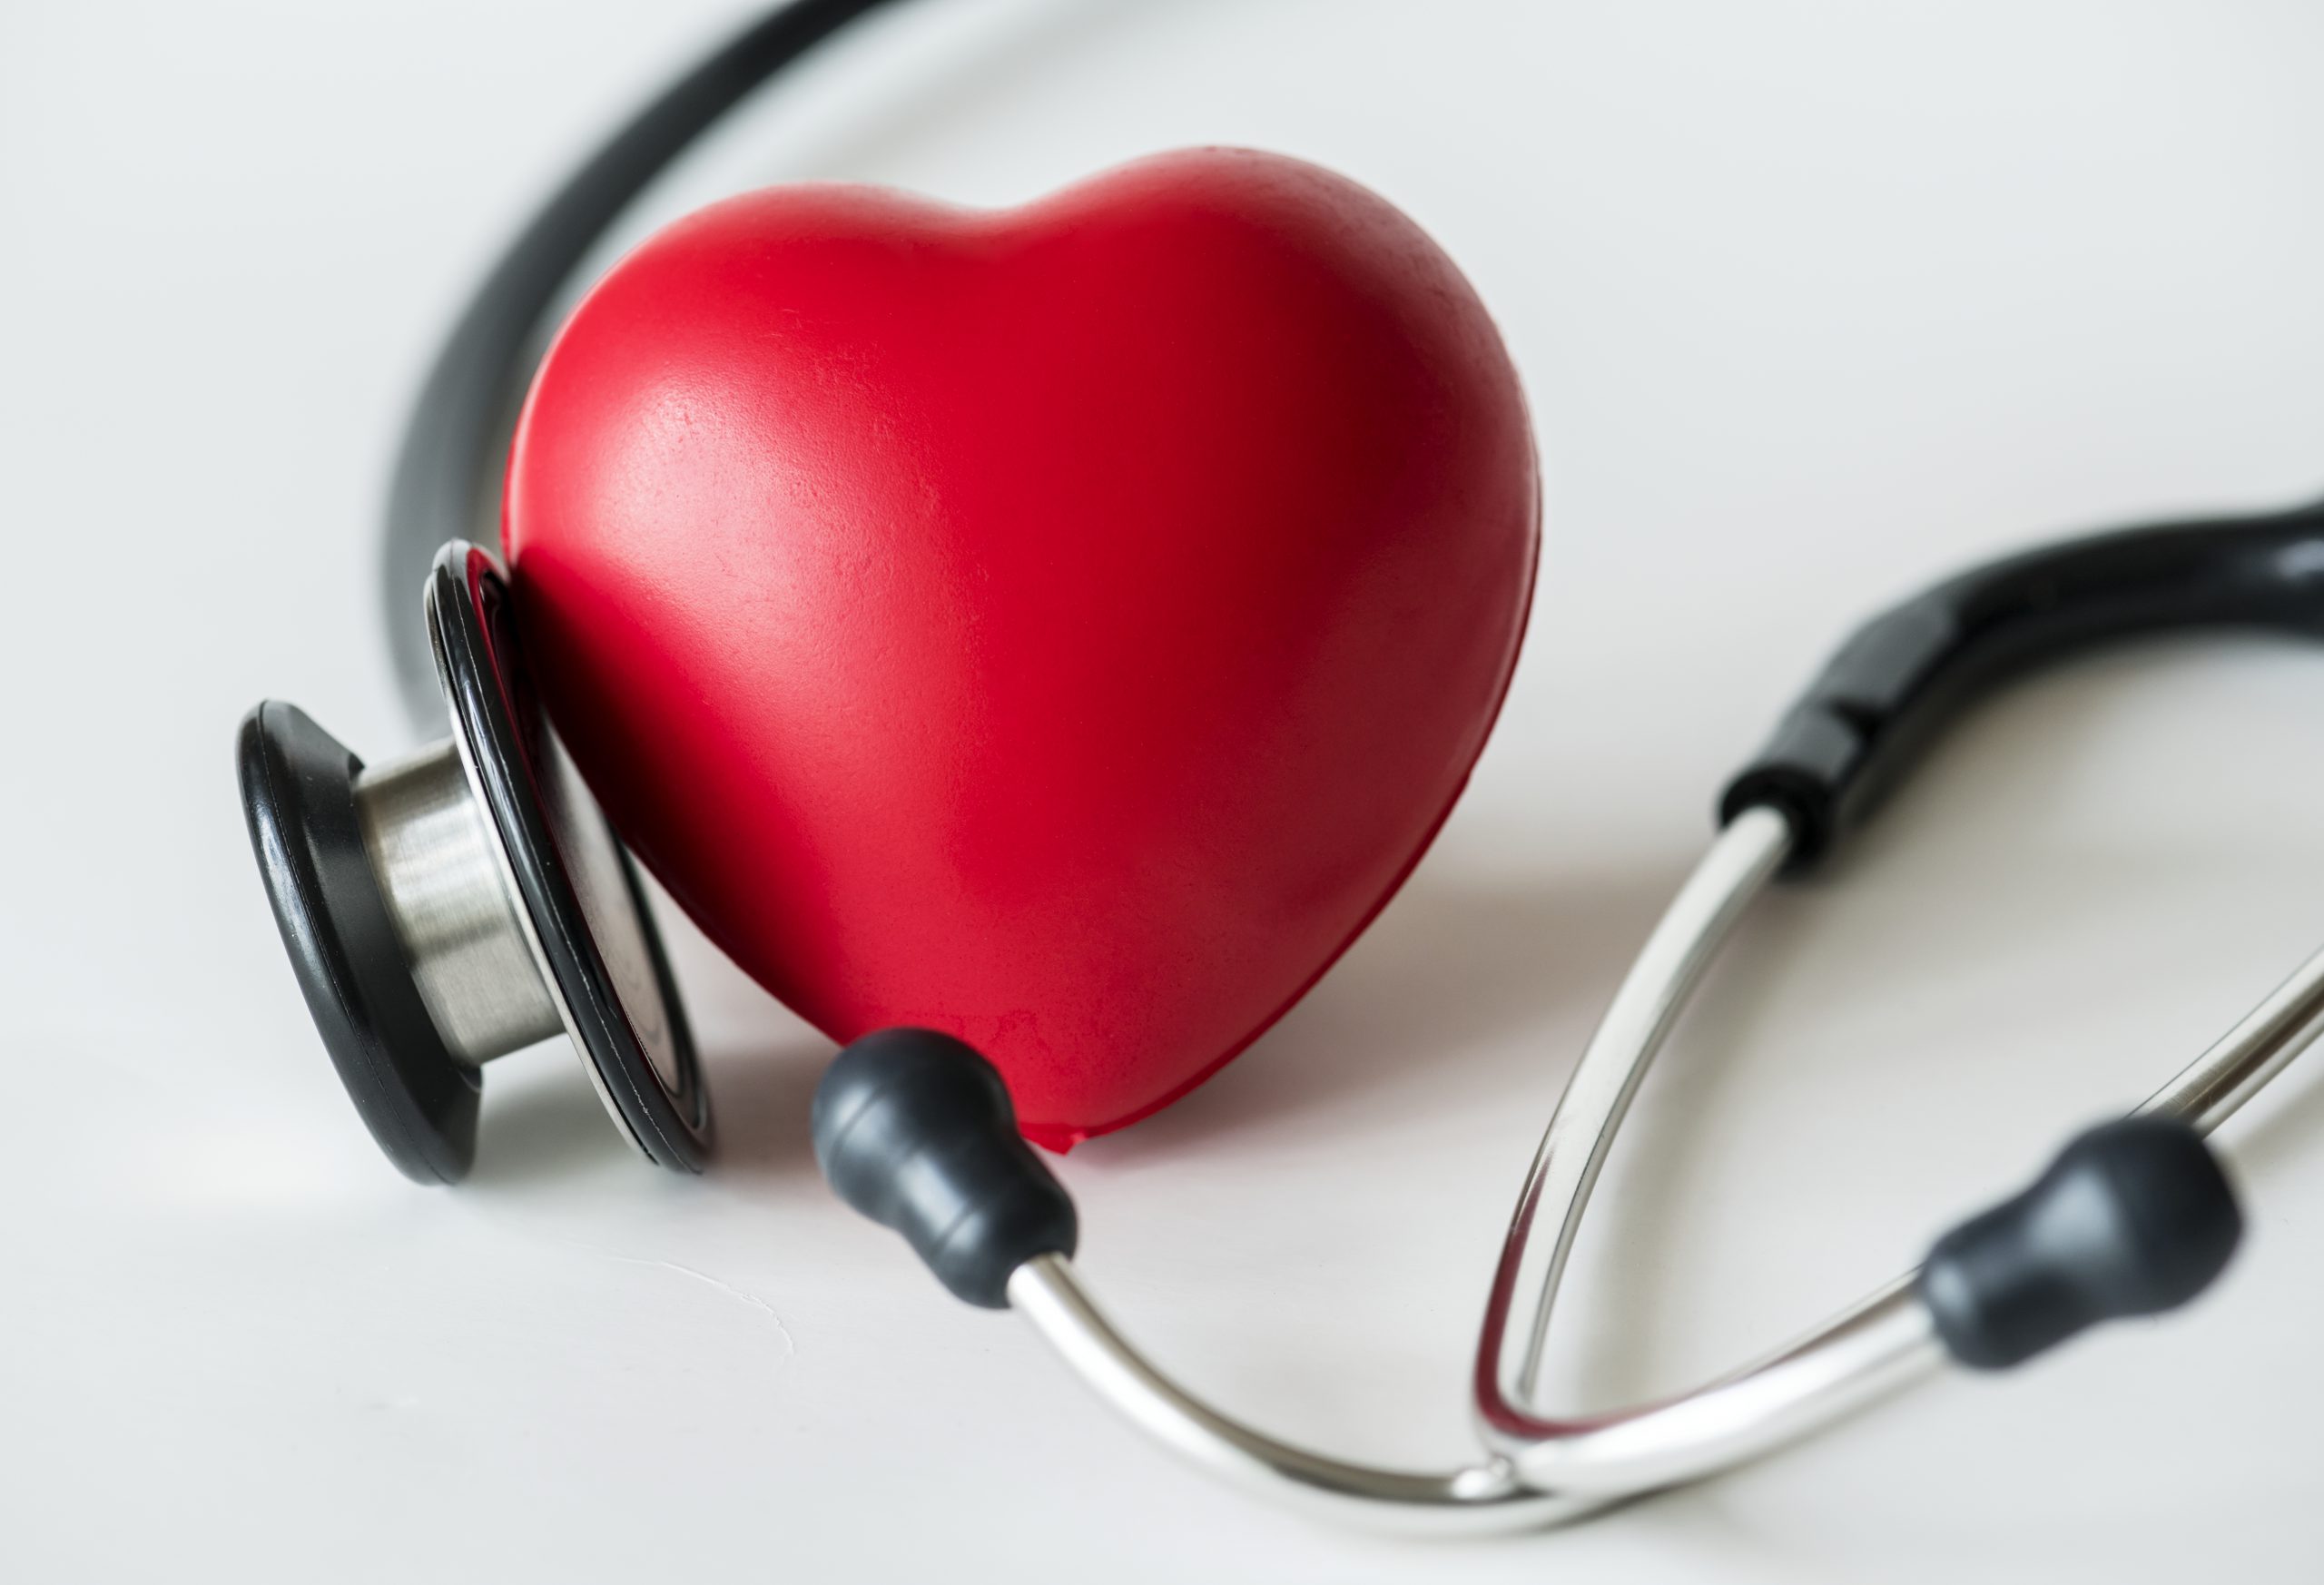 širdies ligų prevencija cituoja sveikatą hipertenzija ir diabeto rizika